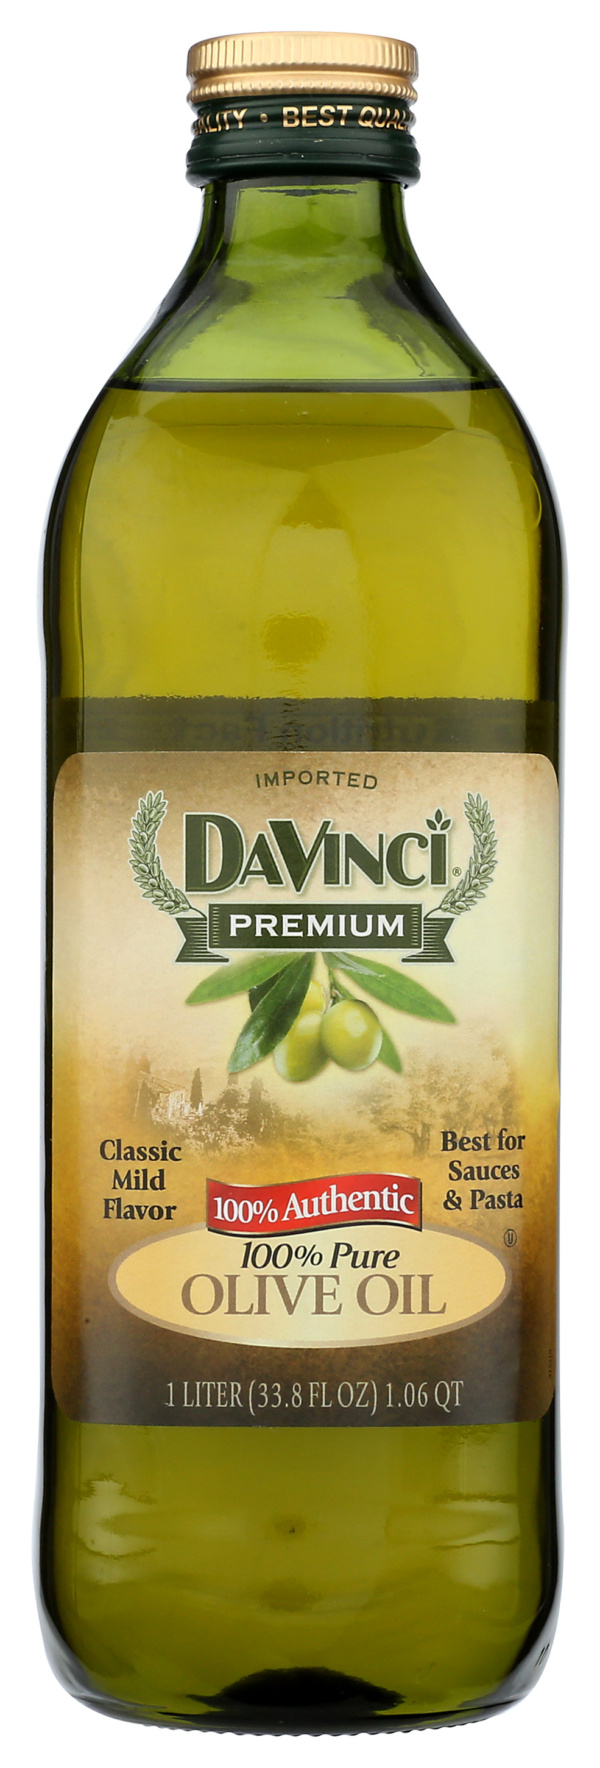 100% Pure Olive Oil – 33.8 FL OZ